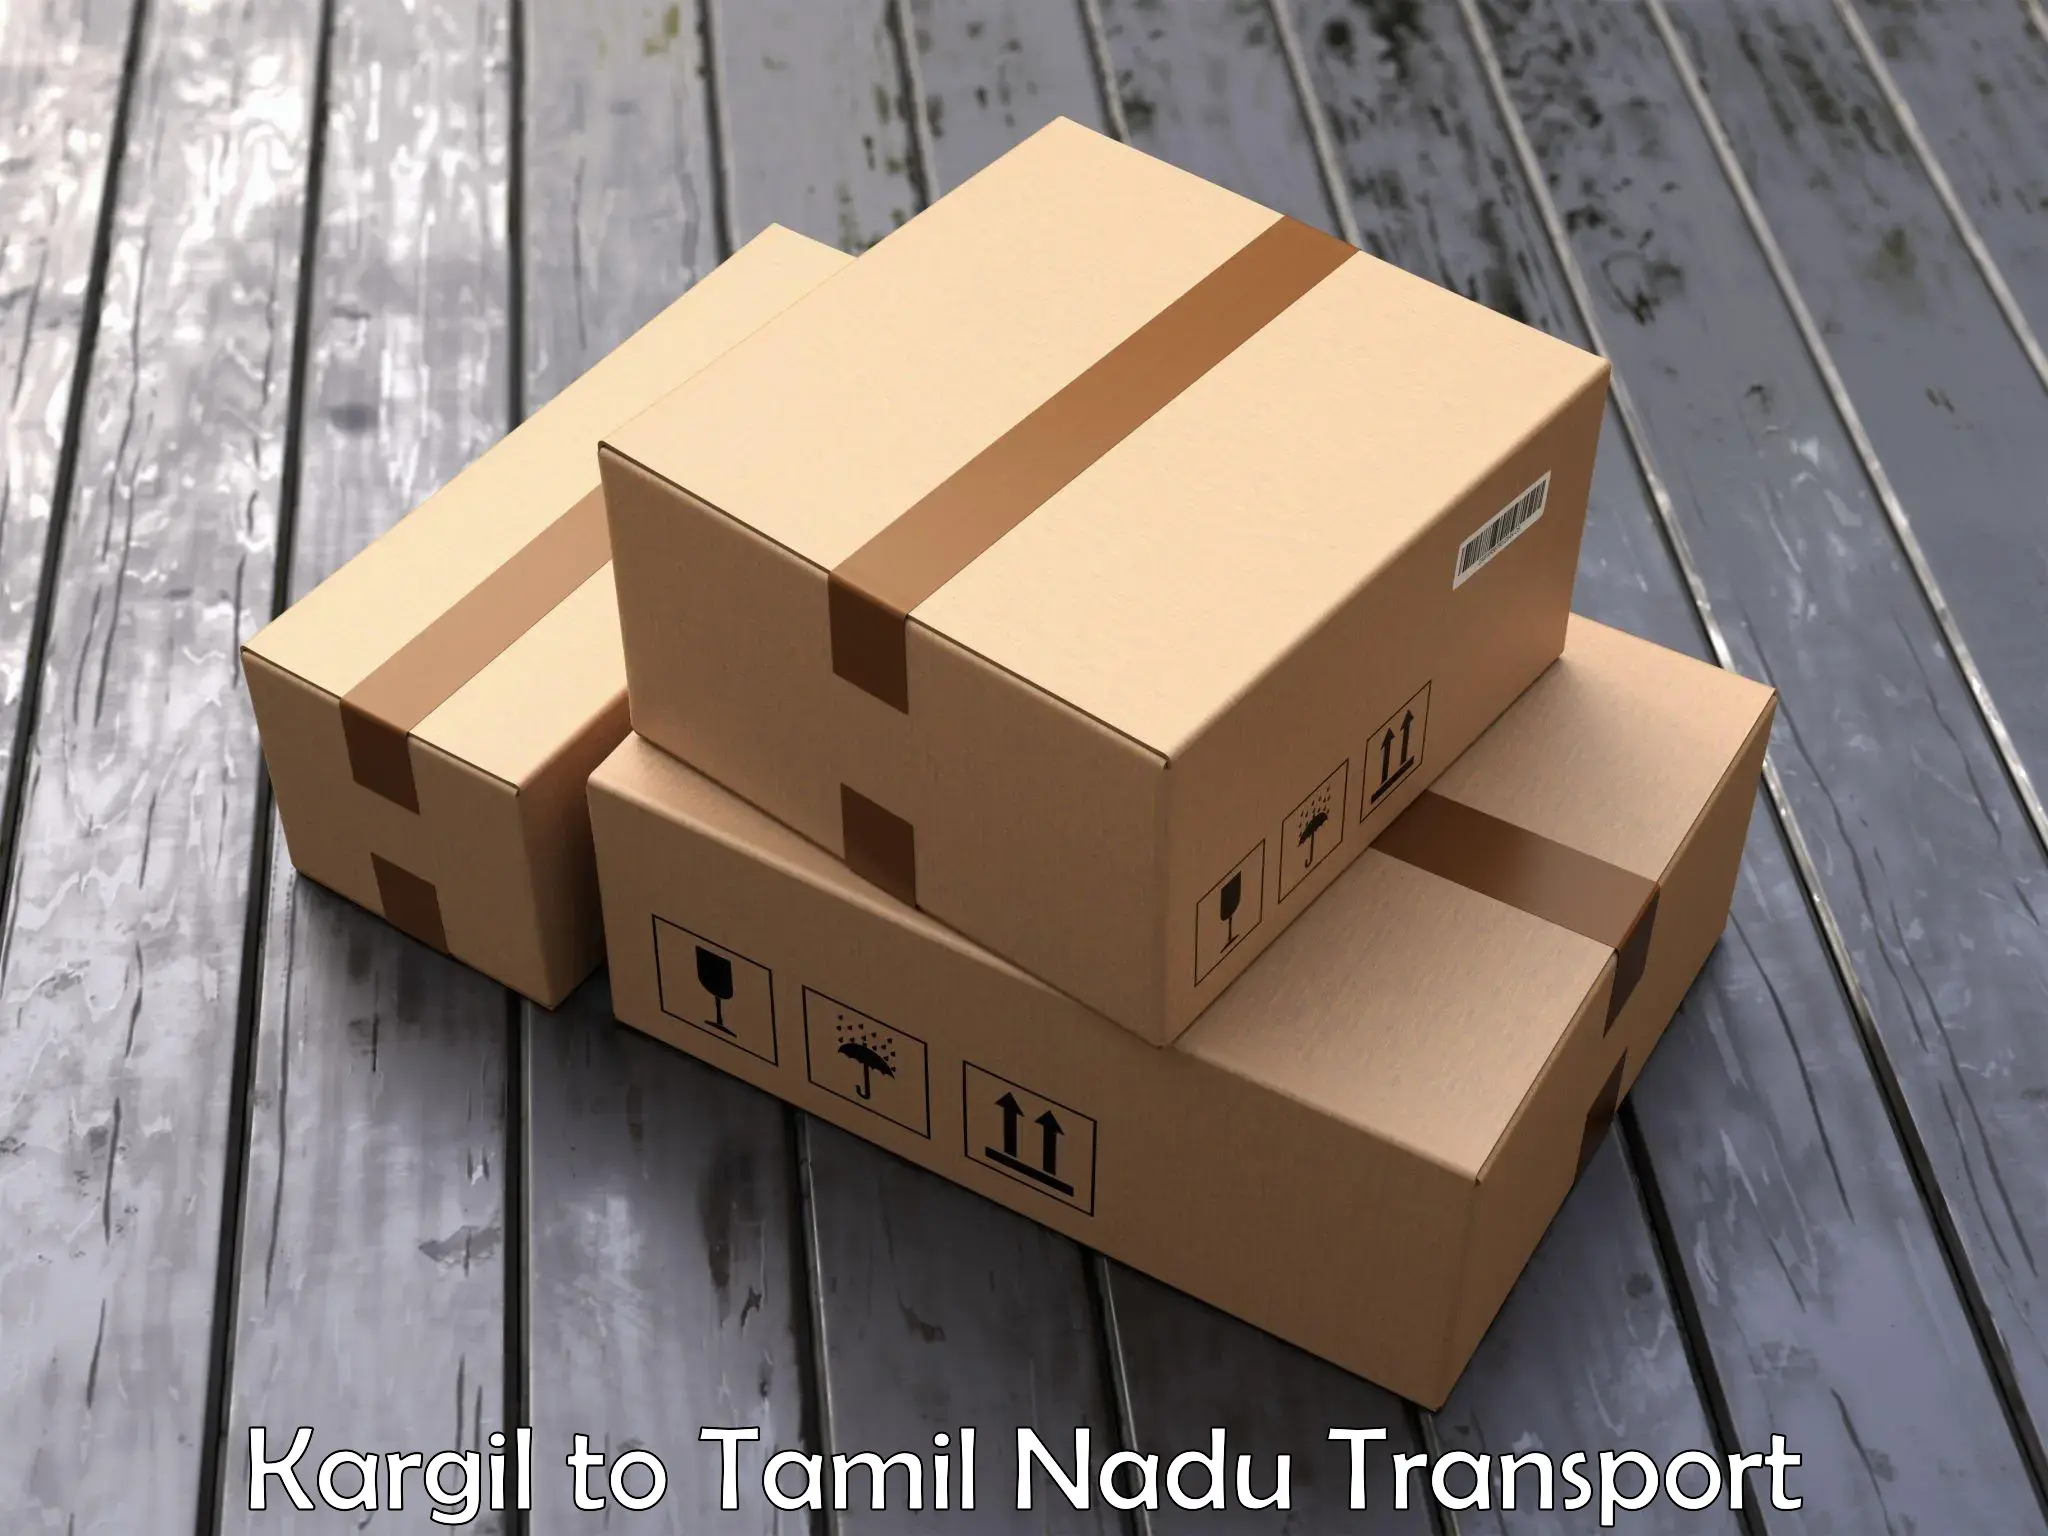 Online transport service Kargil to Memalur